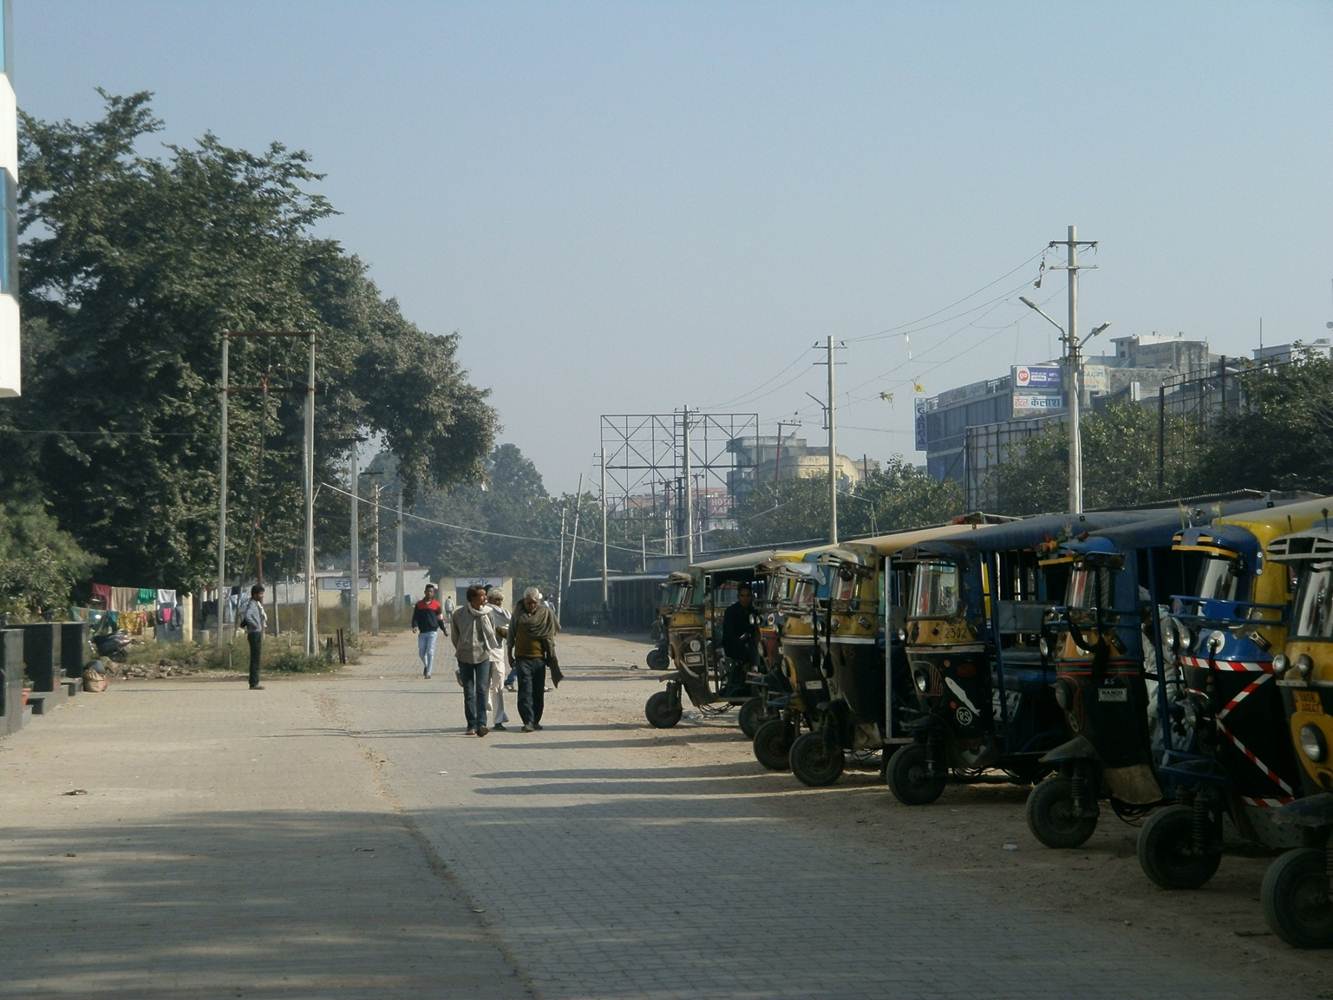 Shivmurti Near Railway Station, Haridwar